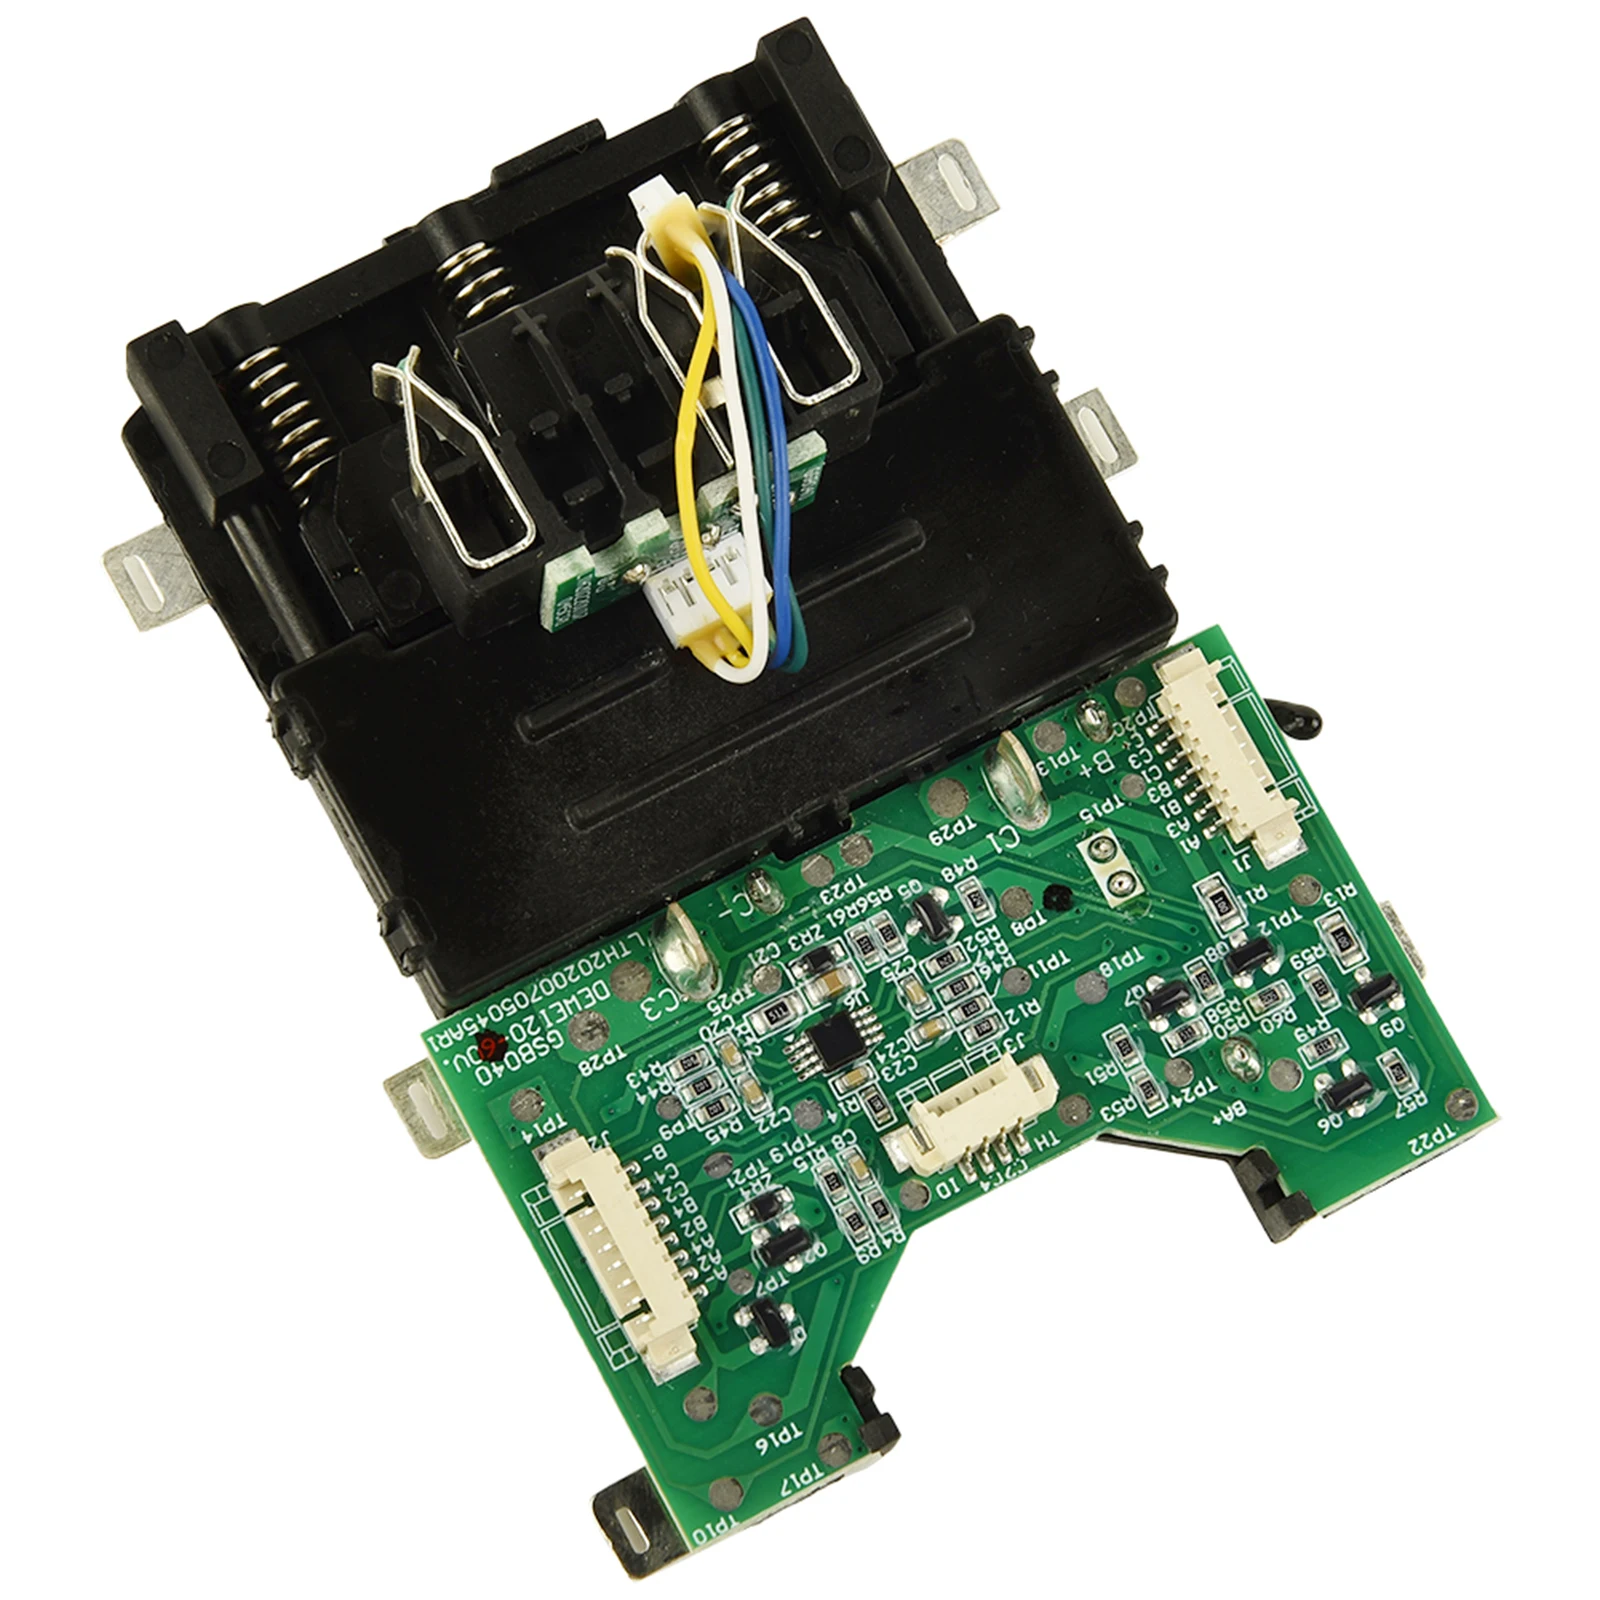 

Защитная печатная плата для зарядки литий-ионного аккумулятора DCB609 для De-Walt 60 в DCB606 Щит защиты печатной платы с обнаружением напряжения